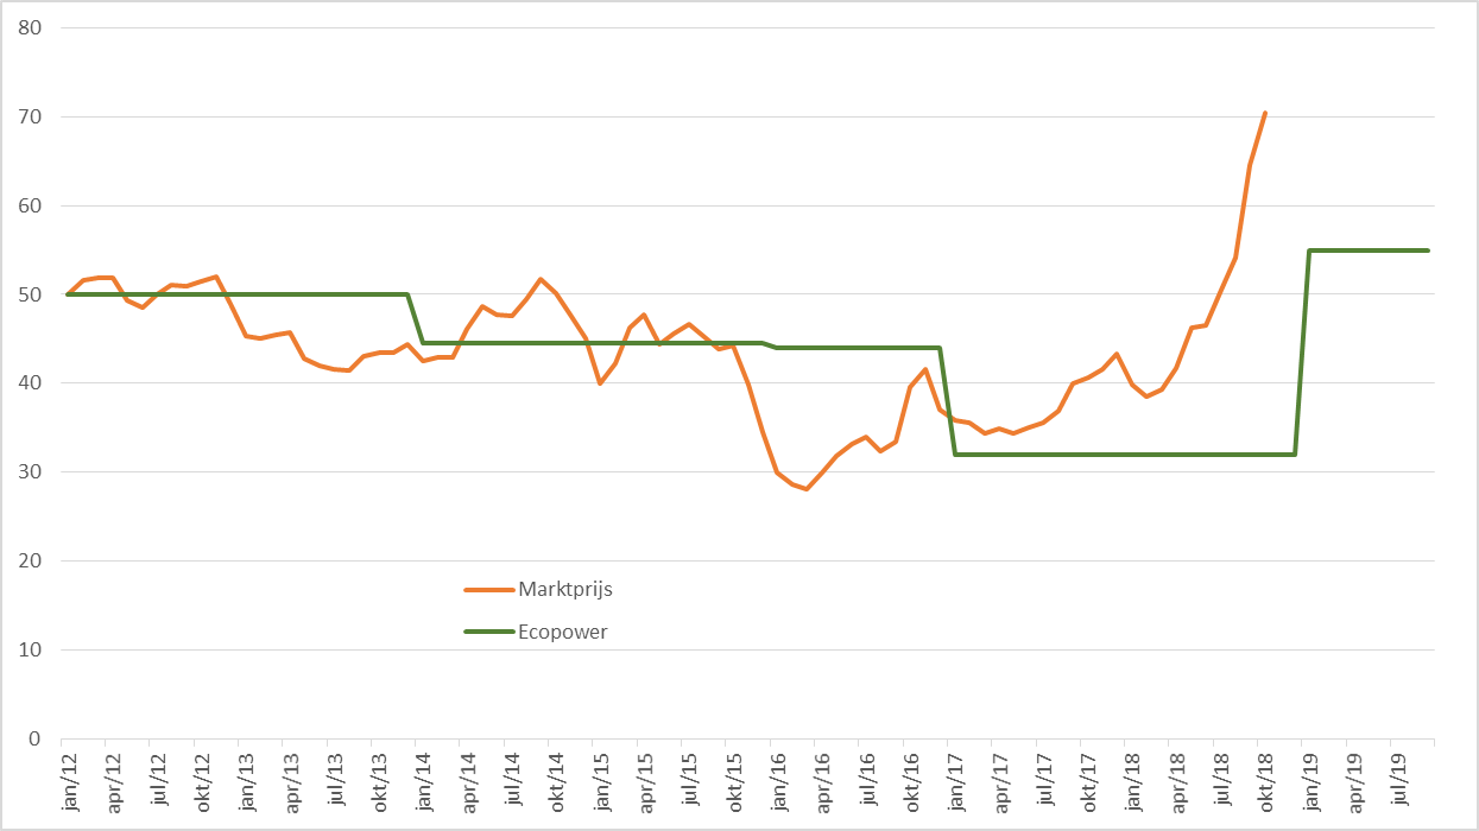 Fig. 2: Overzicht van de marktprijs van 2014 tot 2019, maandelijks gebaseerd op de gepubliceerde jaarprijs voor het komende jaar (oranje lijn) tegenover de Ecopower-prijs (groene lijn).